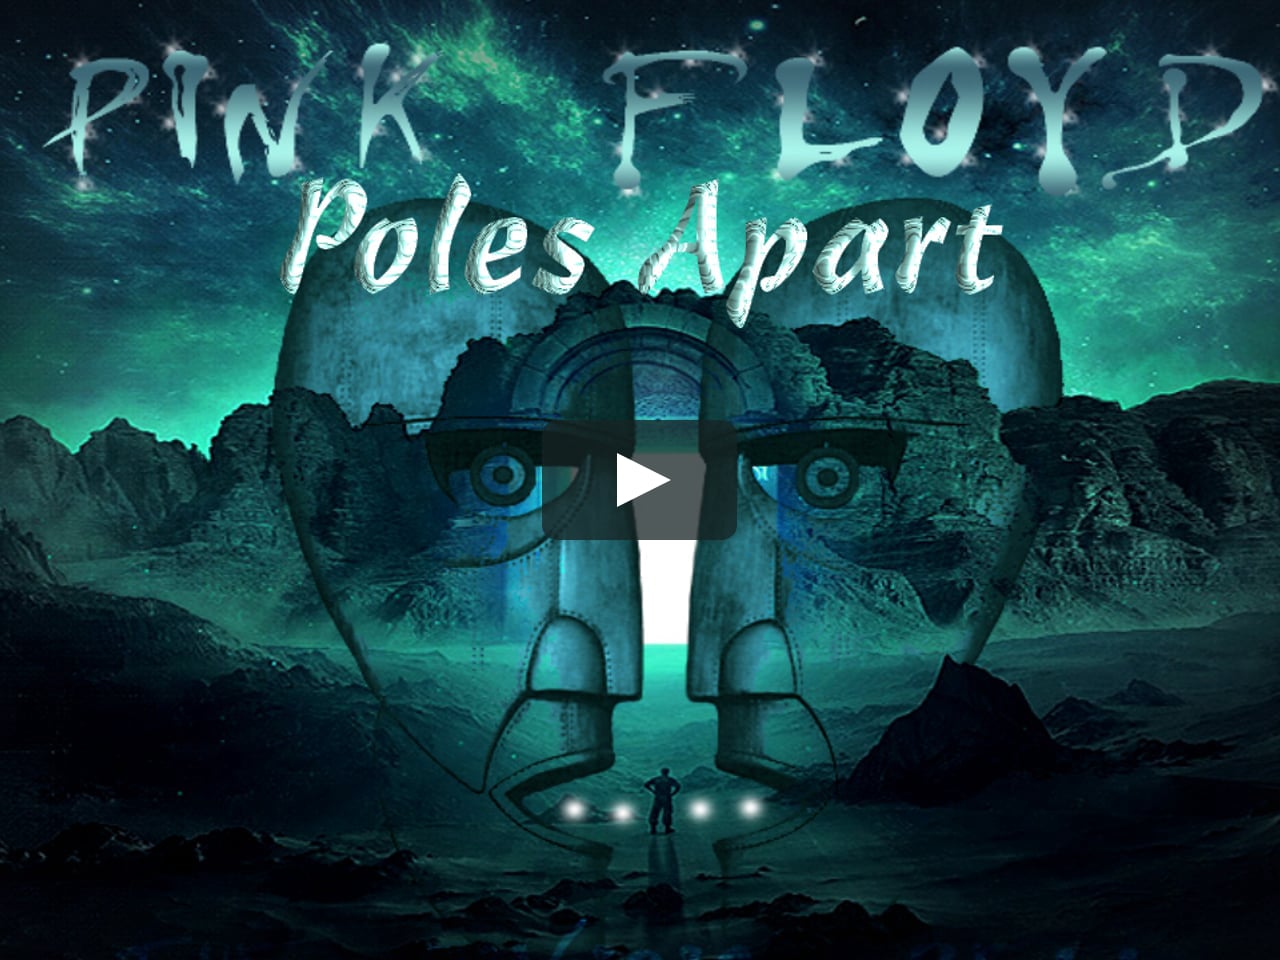 Pink Floyd - Poles Apart on Vimeo